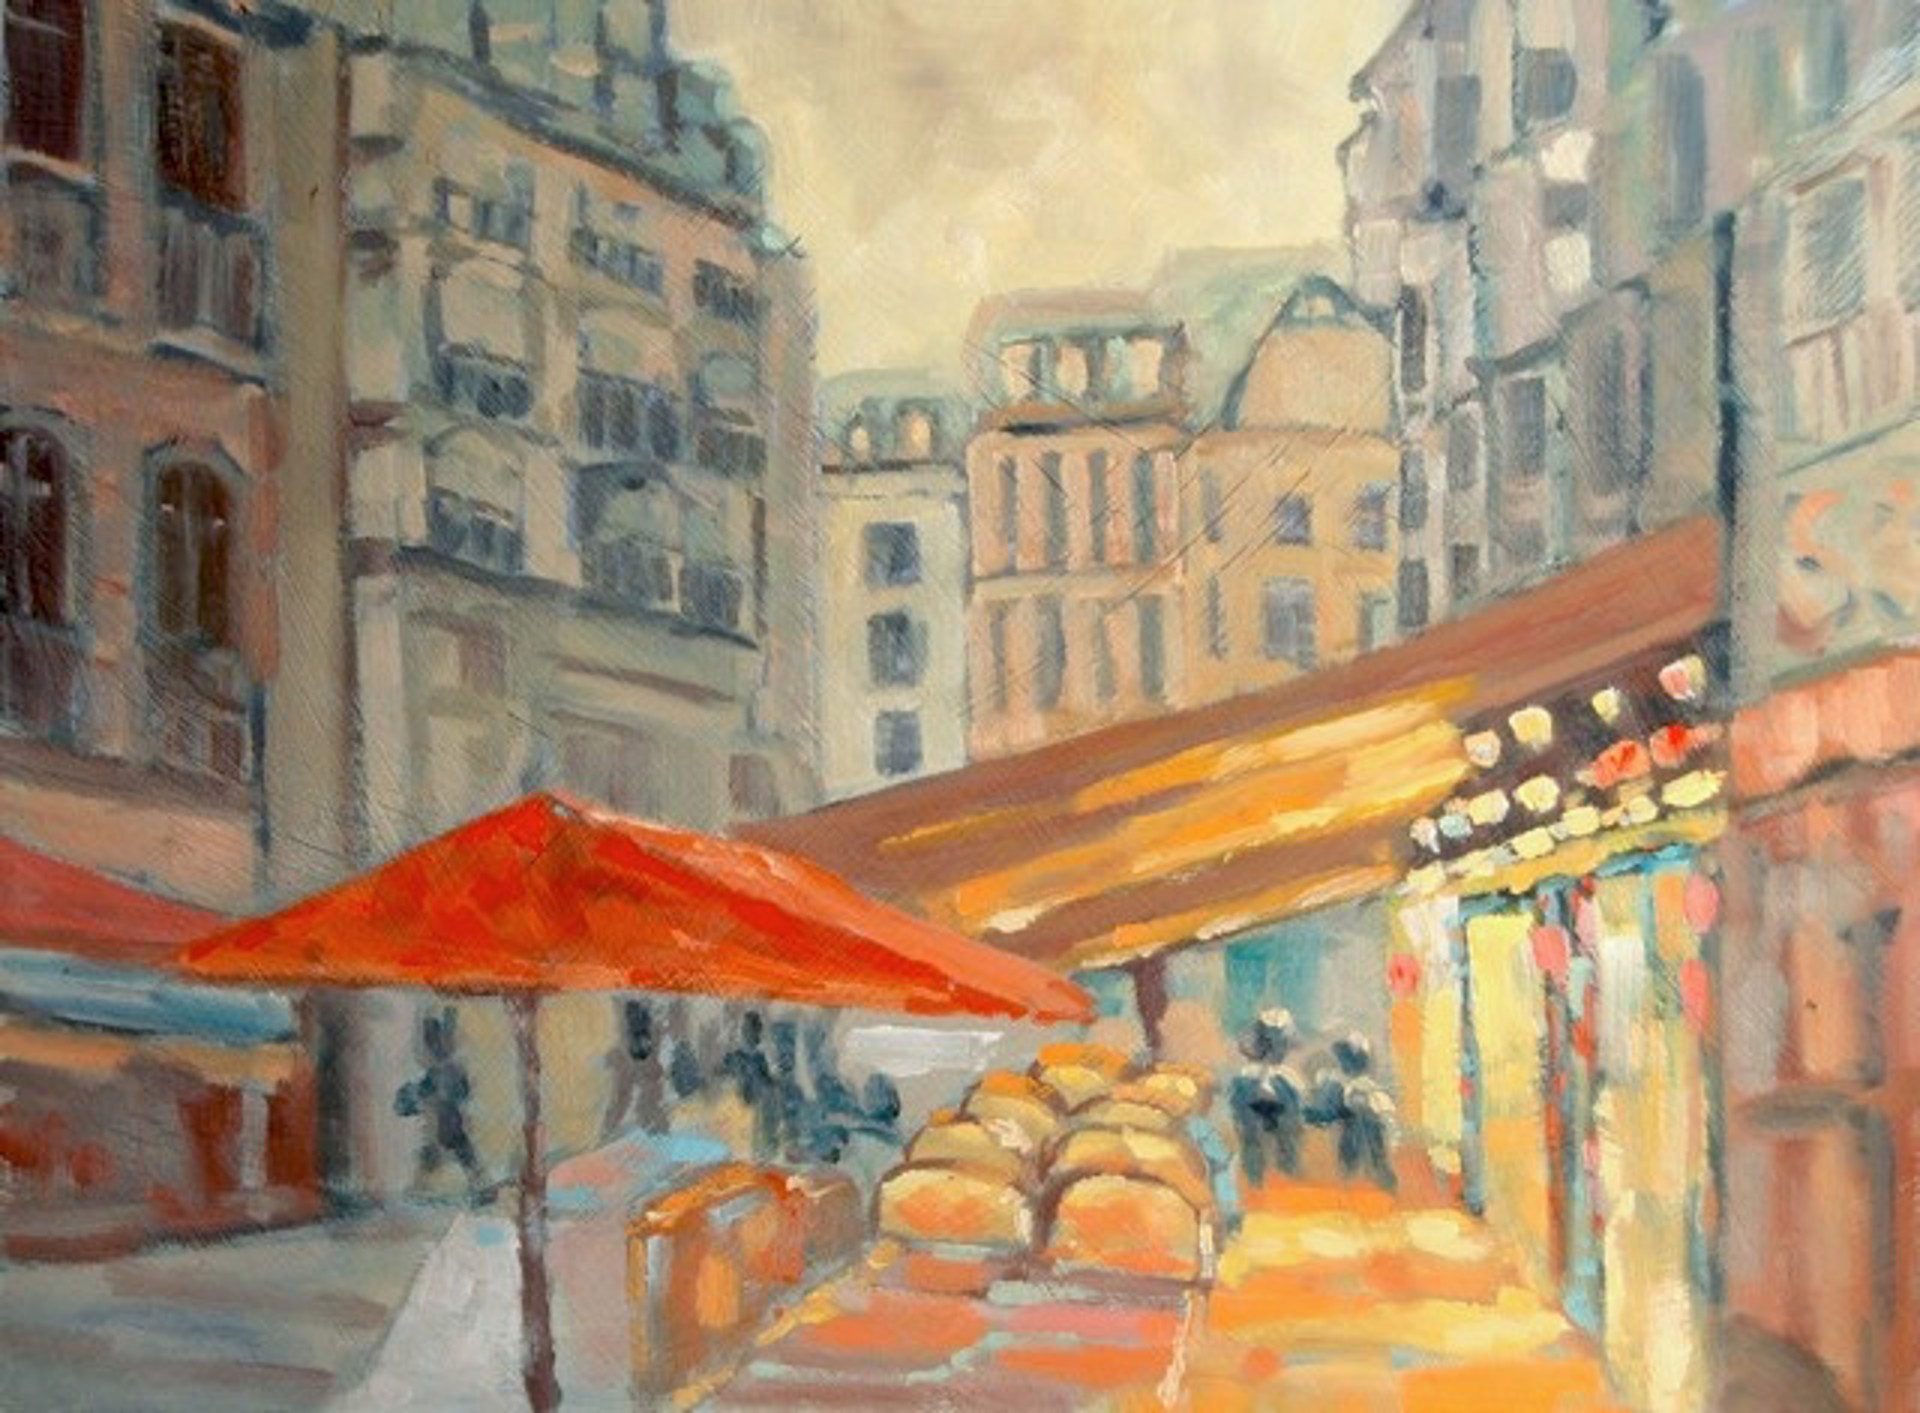 Cafe de Paris by Michael Kilburn